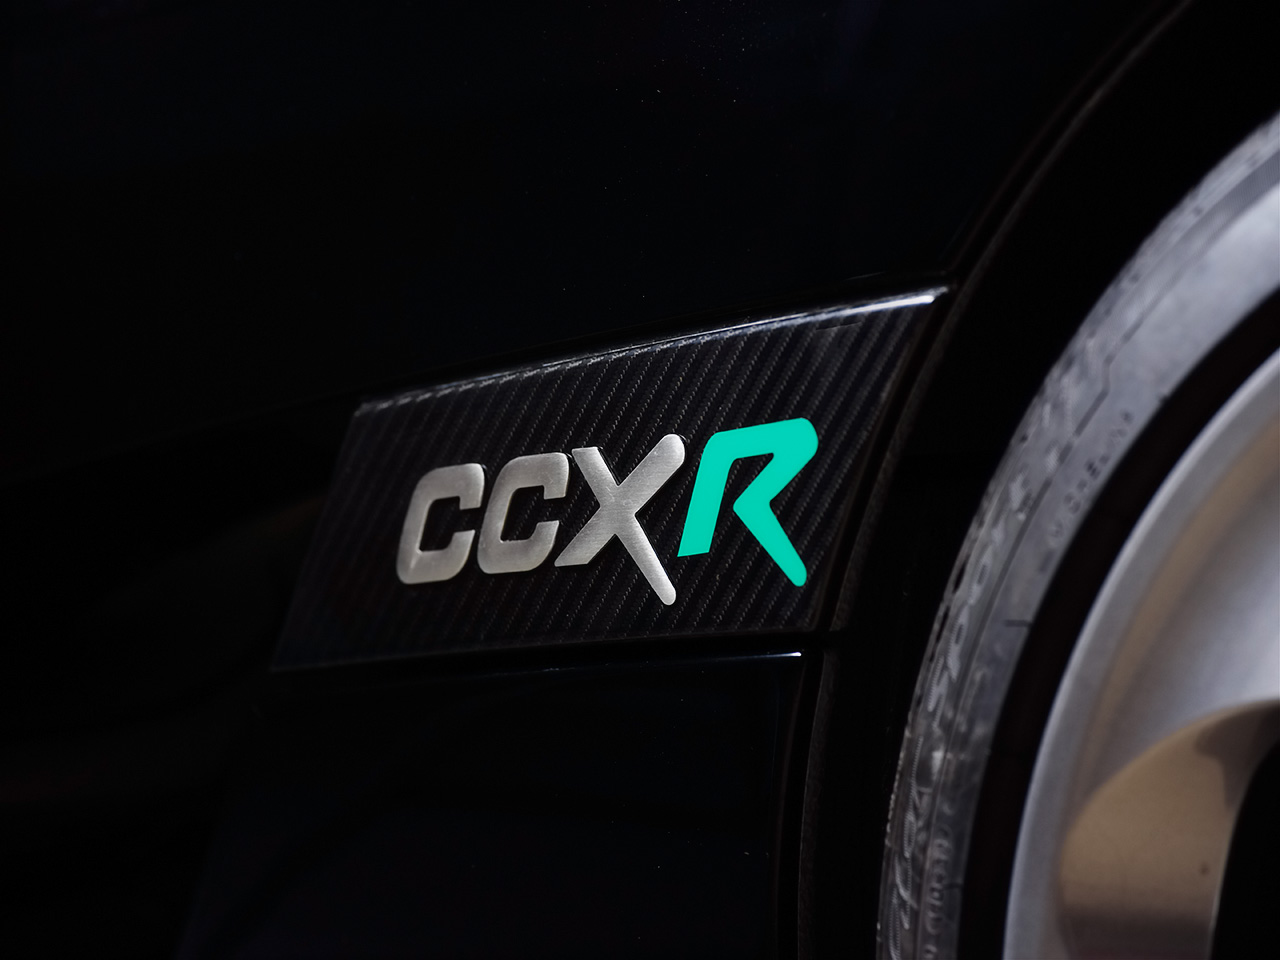 Koenigsegg Ccxr Logo On Carbon Fiber Wallpaper